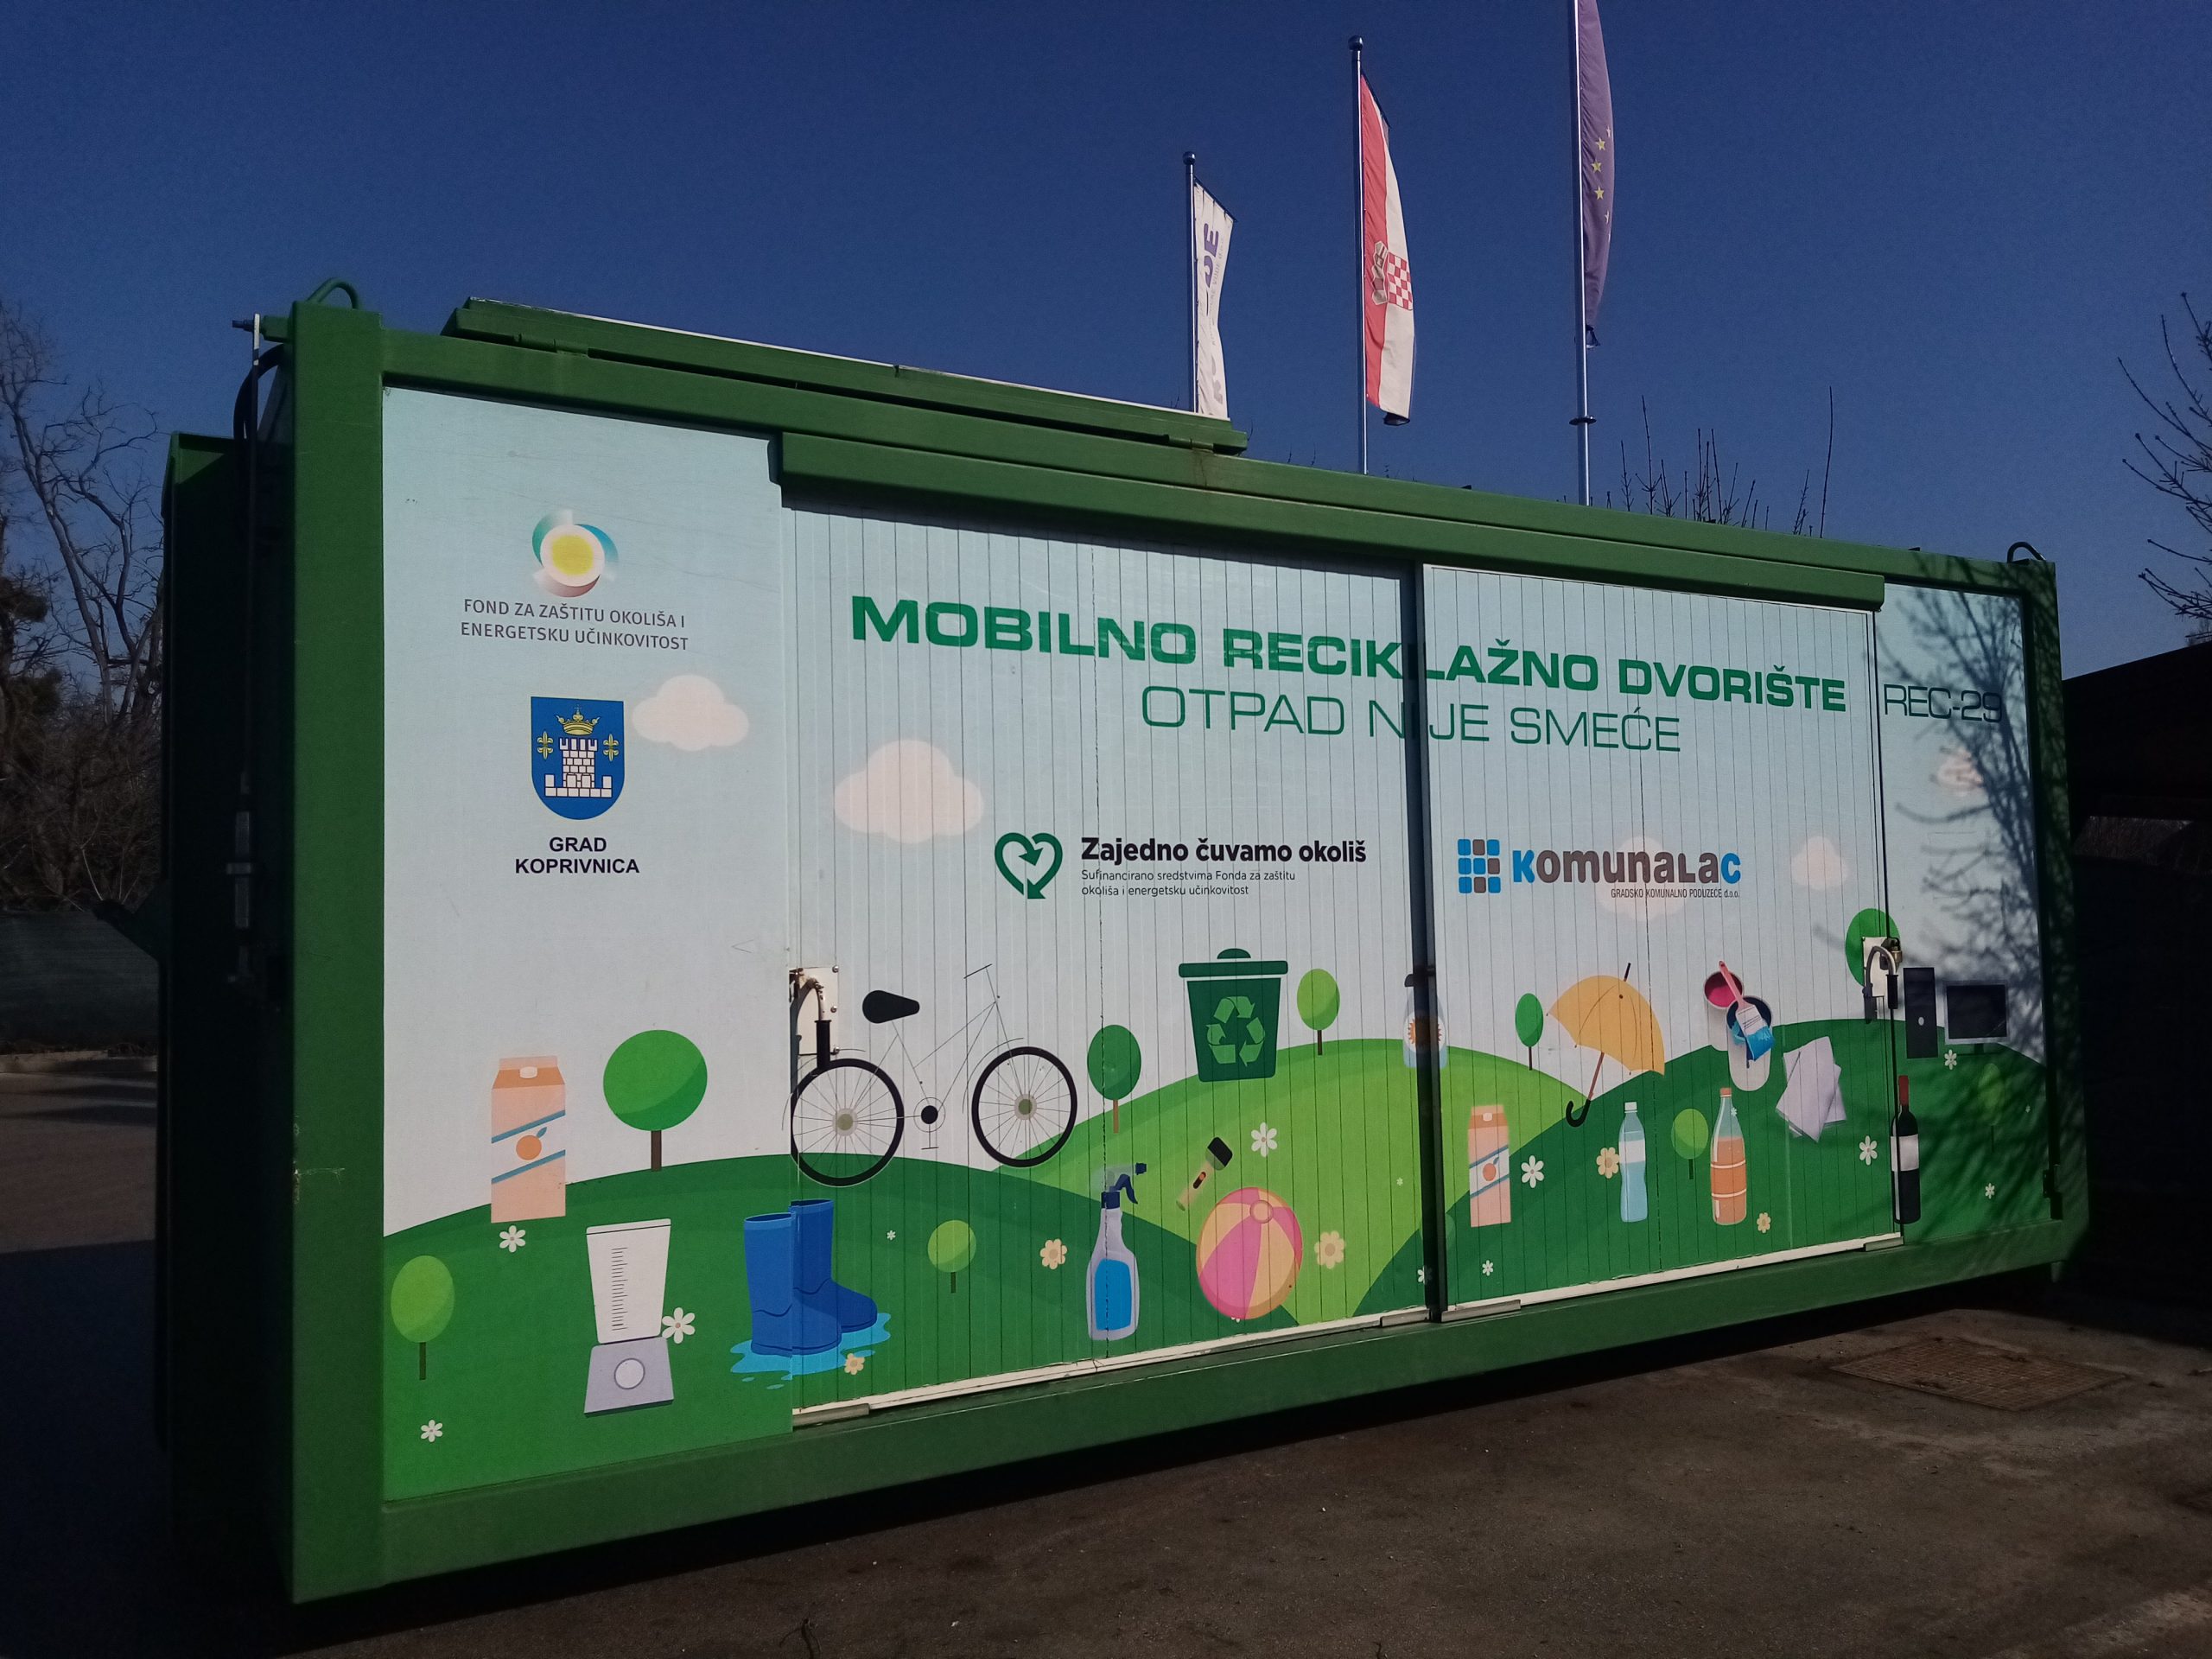 Mobilno reciklažno dvorište u četvrtak, 1. lipnja, nalazit će se na Vinici kod društvenog doma